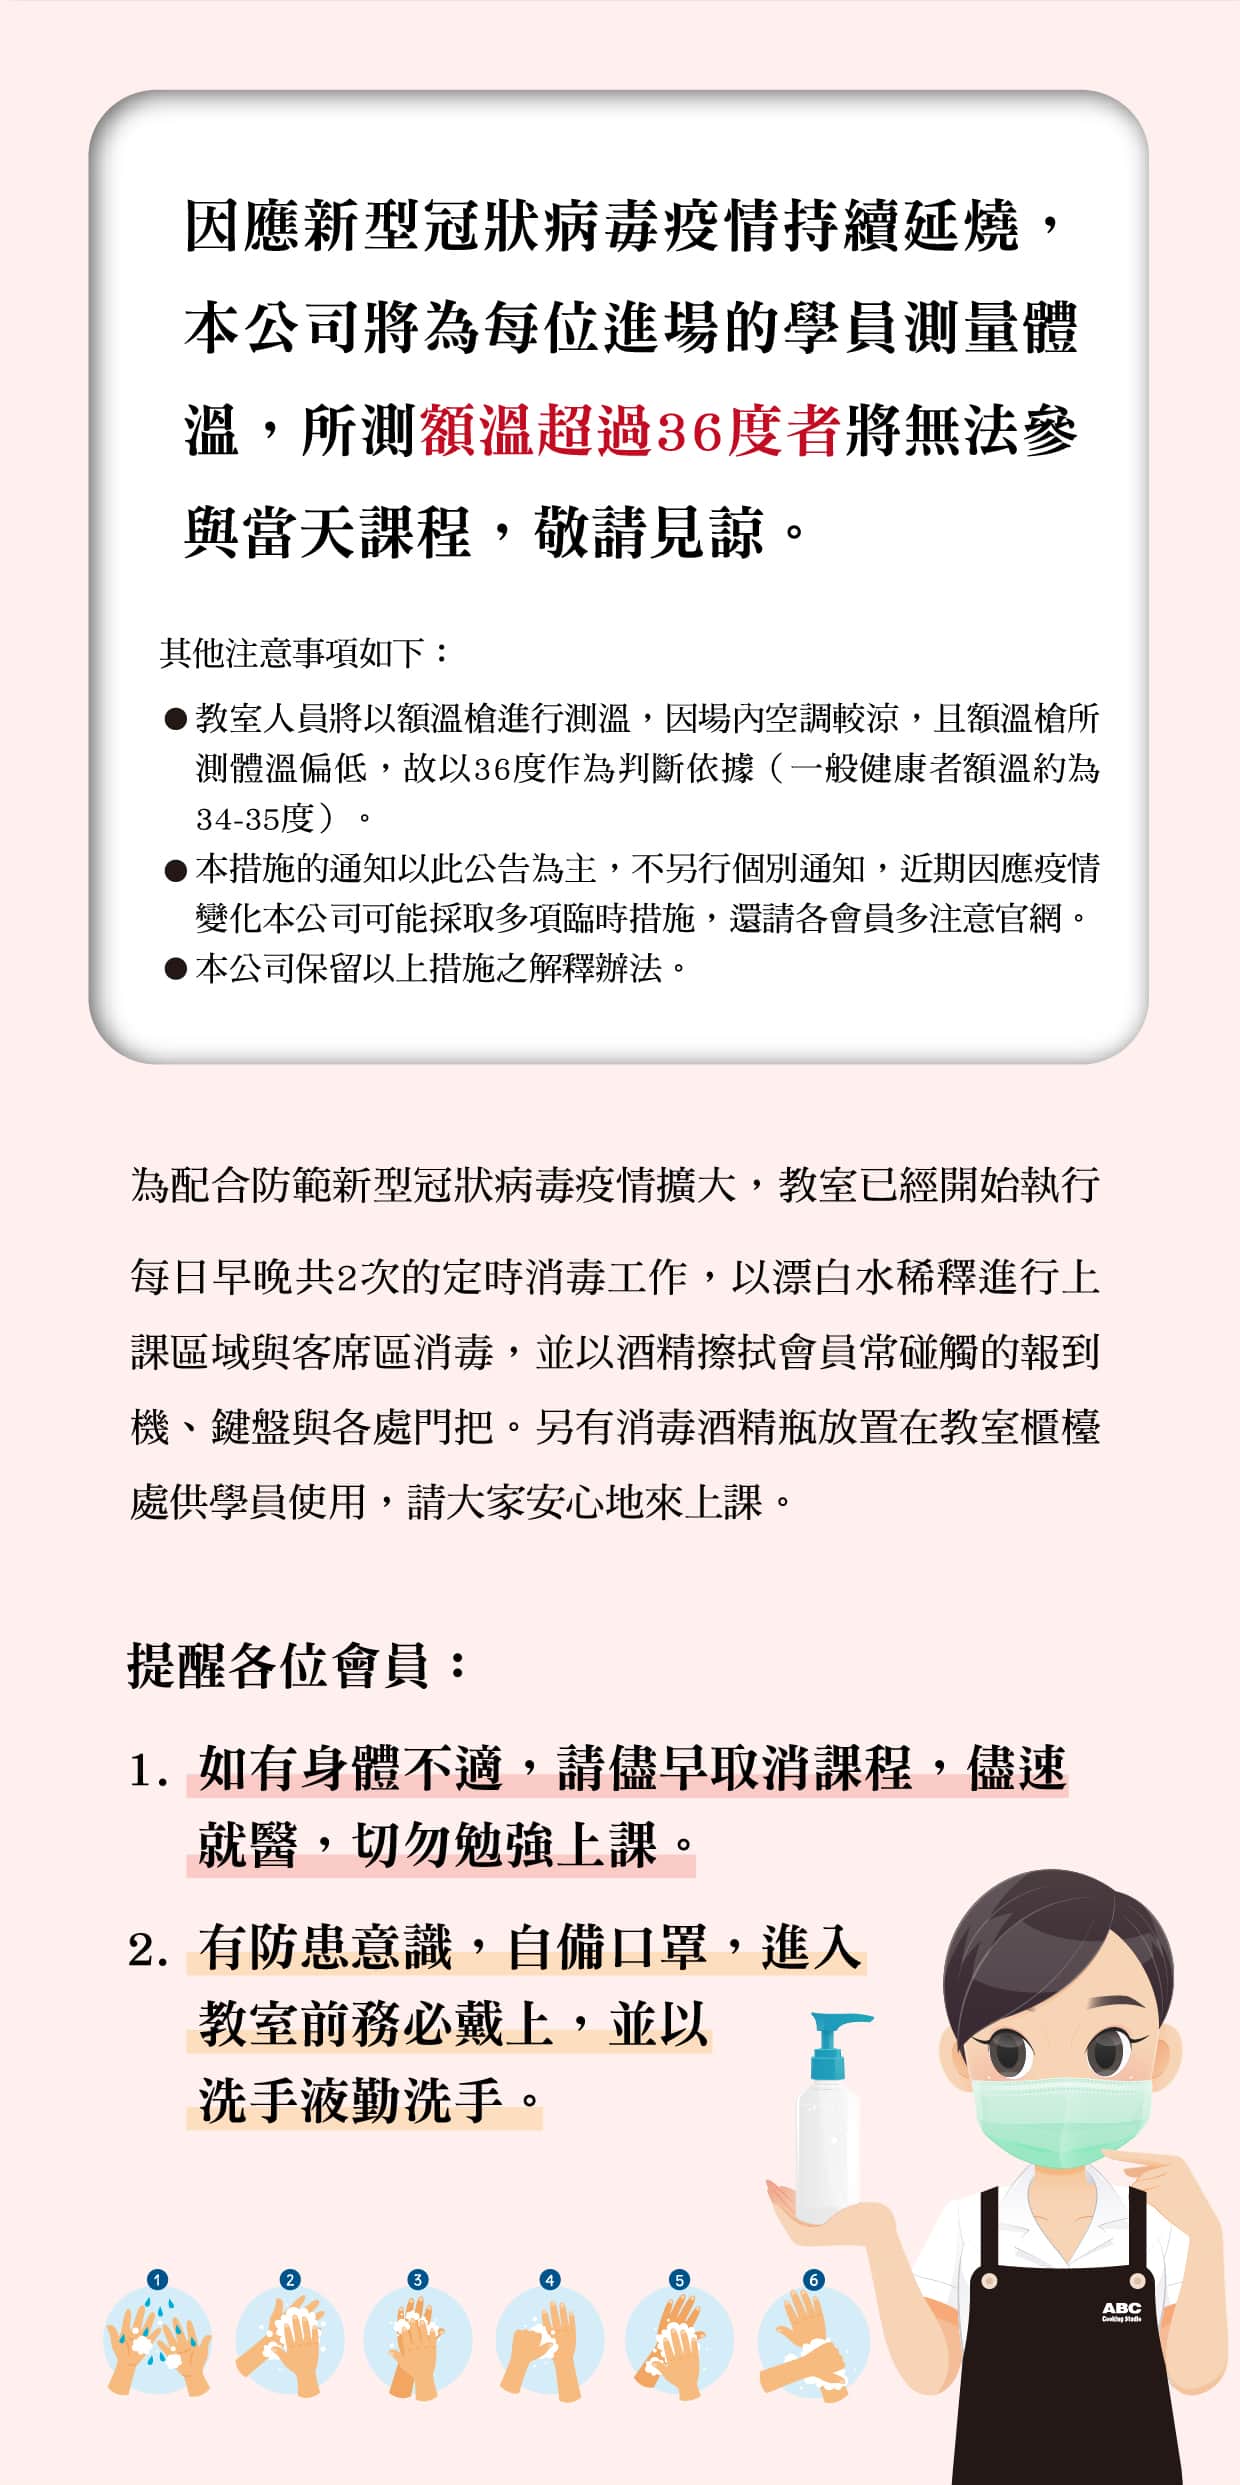 最新公告 防疫期間注意事項及說明 最新消息 Abc Cooking Studio Taiwan